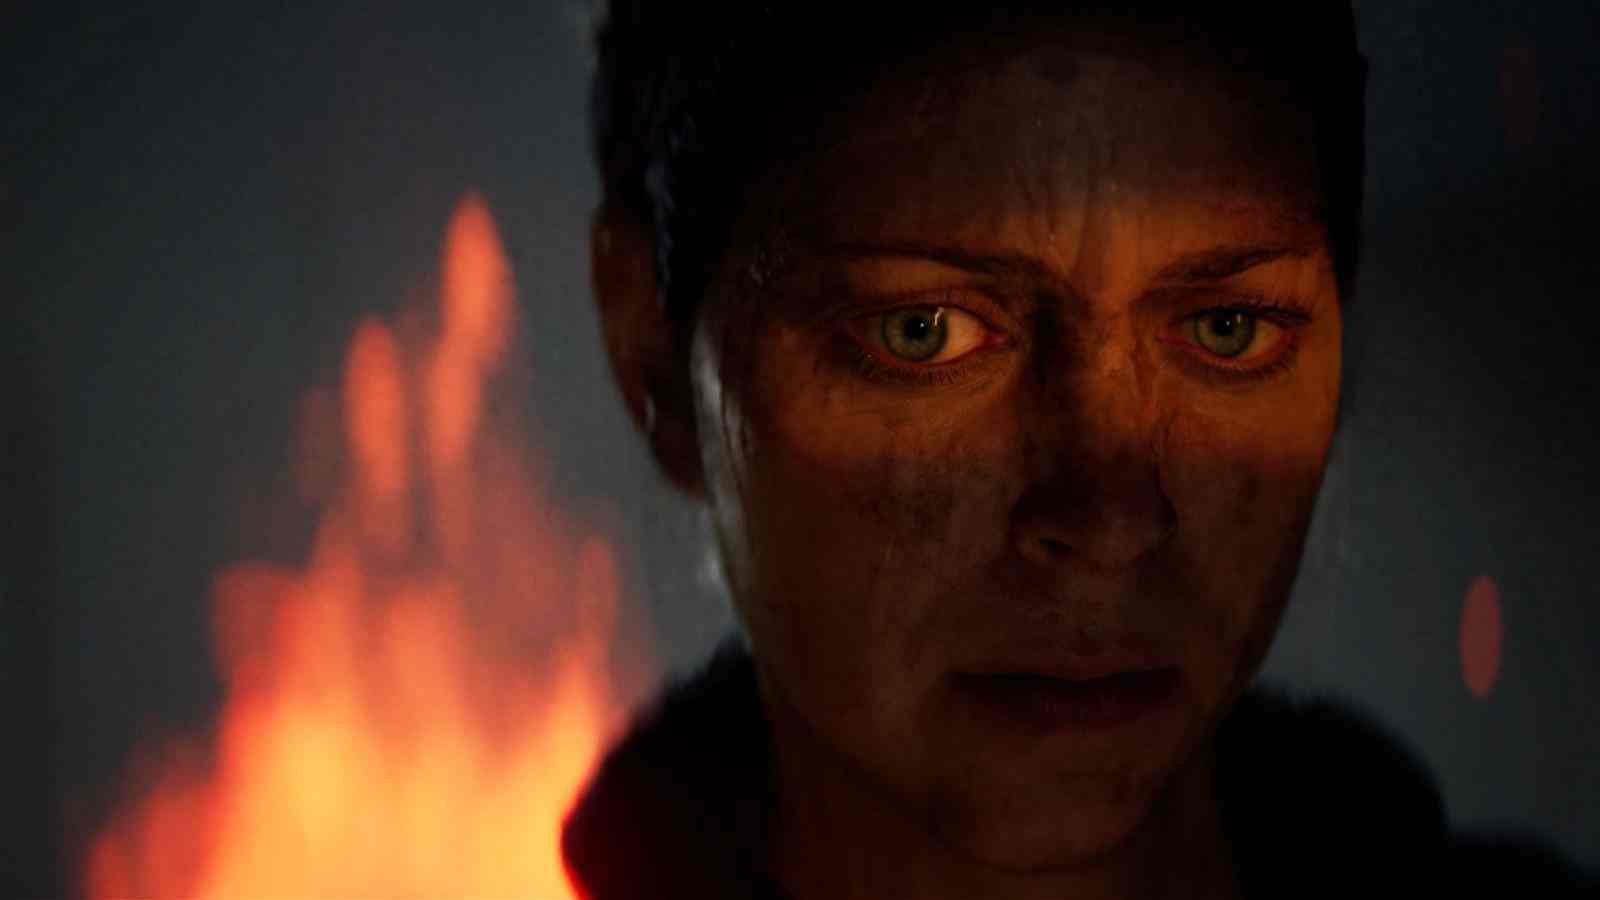 《地狱之刃2》团队与专家合作了解精神病 更好描绘角色